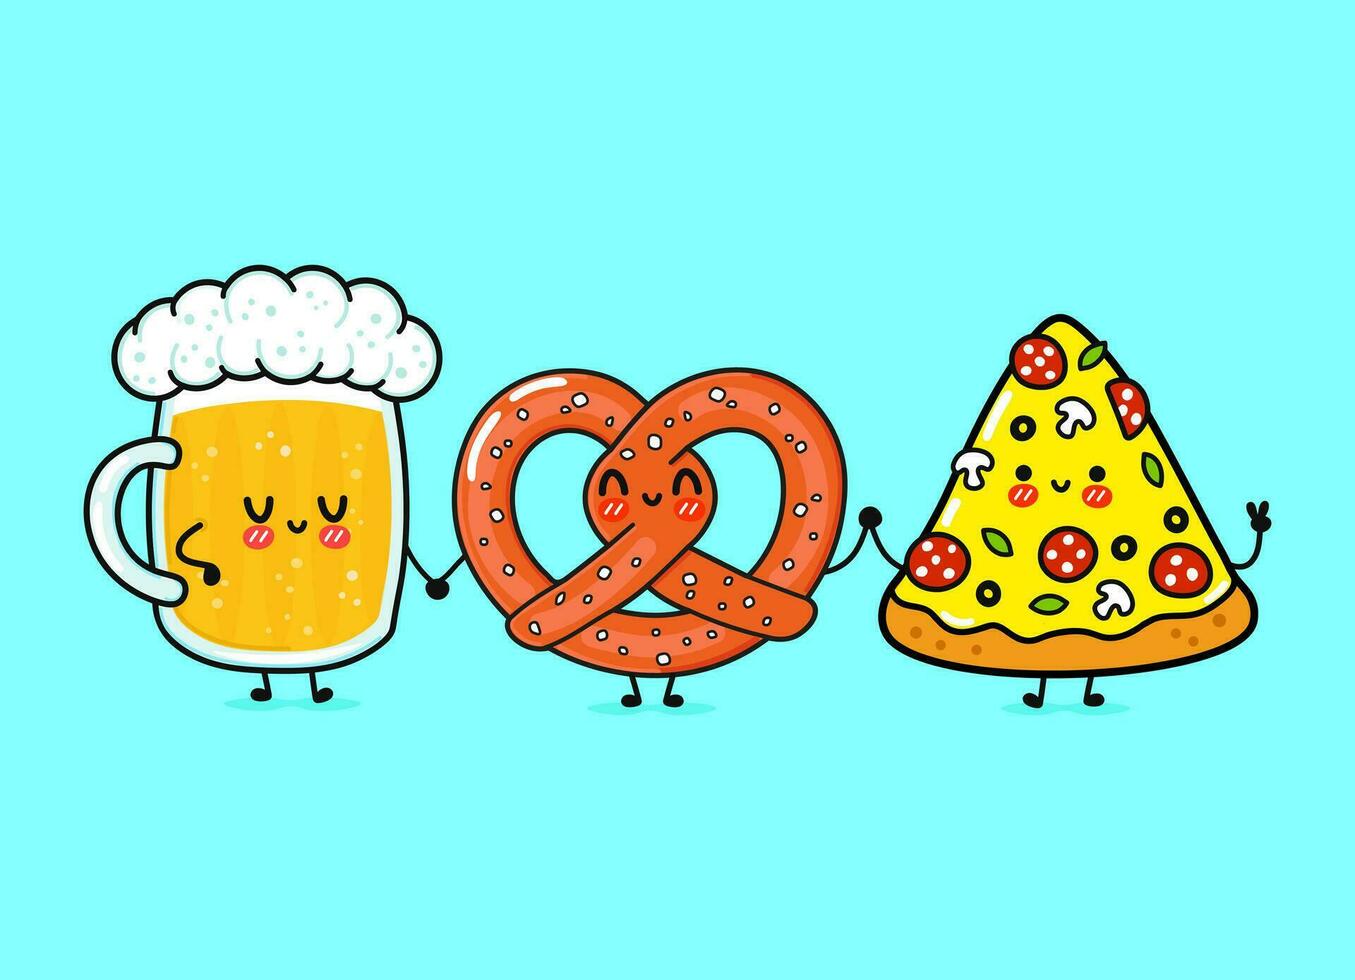 süßes, lustiges fröhliches glas bier, pizza und brezel. Vektor handgezeichnete kawaii Zeichentrickfiguren, Illustrationssymbol. Lustiges Cartoon-Glas Bier, Pizza und Brezel-Maskottchen-Freunde-Konzept